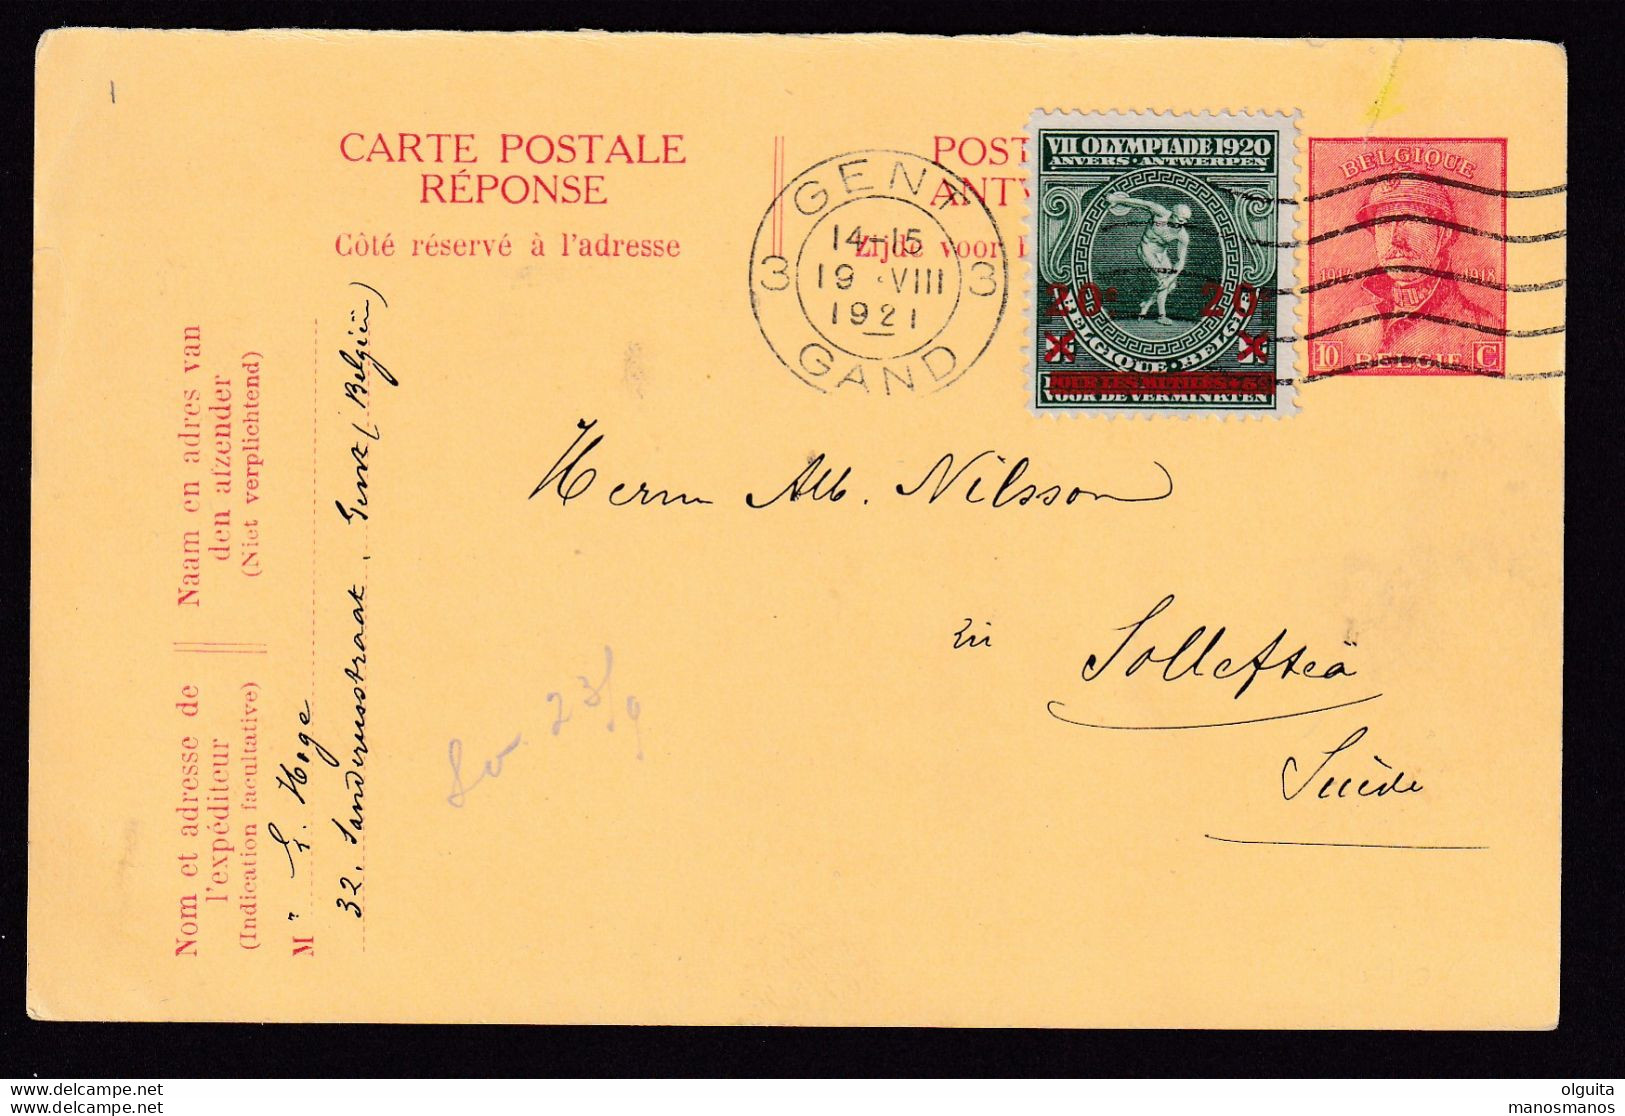 DDBB 310 - Entier Postal Casqué + TP Jeux Olympiques GENT 1921 Vers Suède - Emploi En Service International - Estate 1920: Anversa